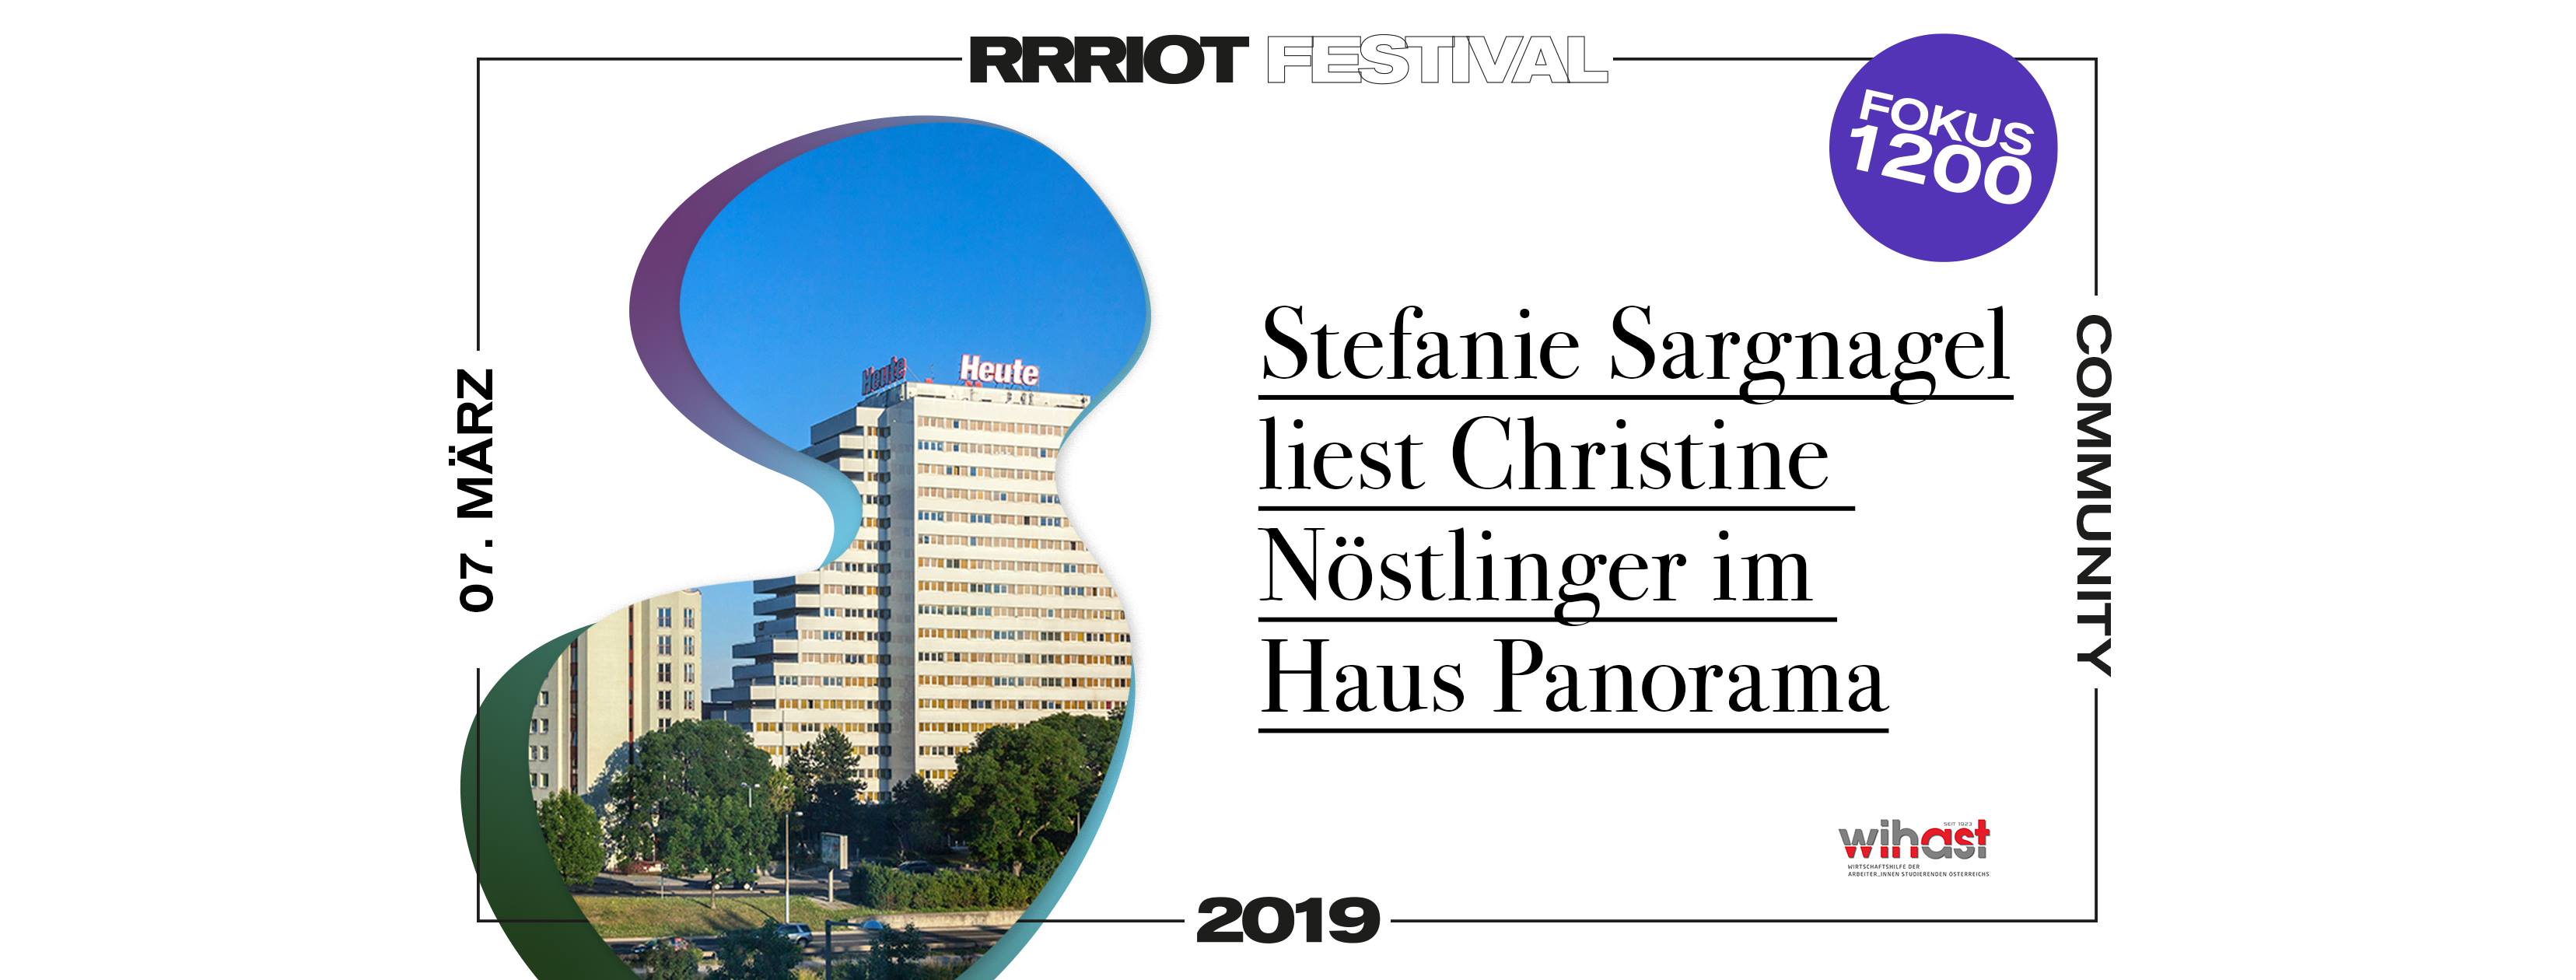 Rrriot Festival 2019 | Stefanie Sargnagel liest Christine Nöstlinger - 1200